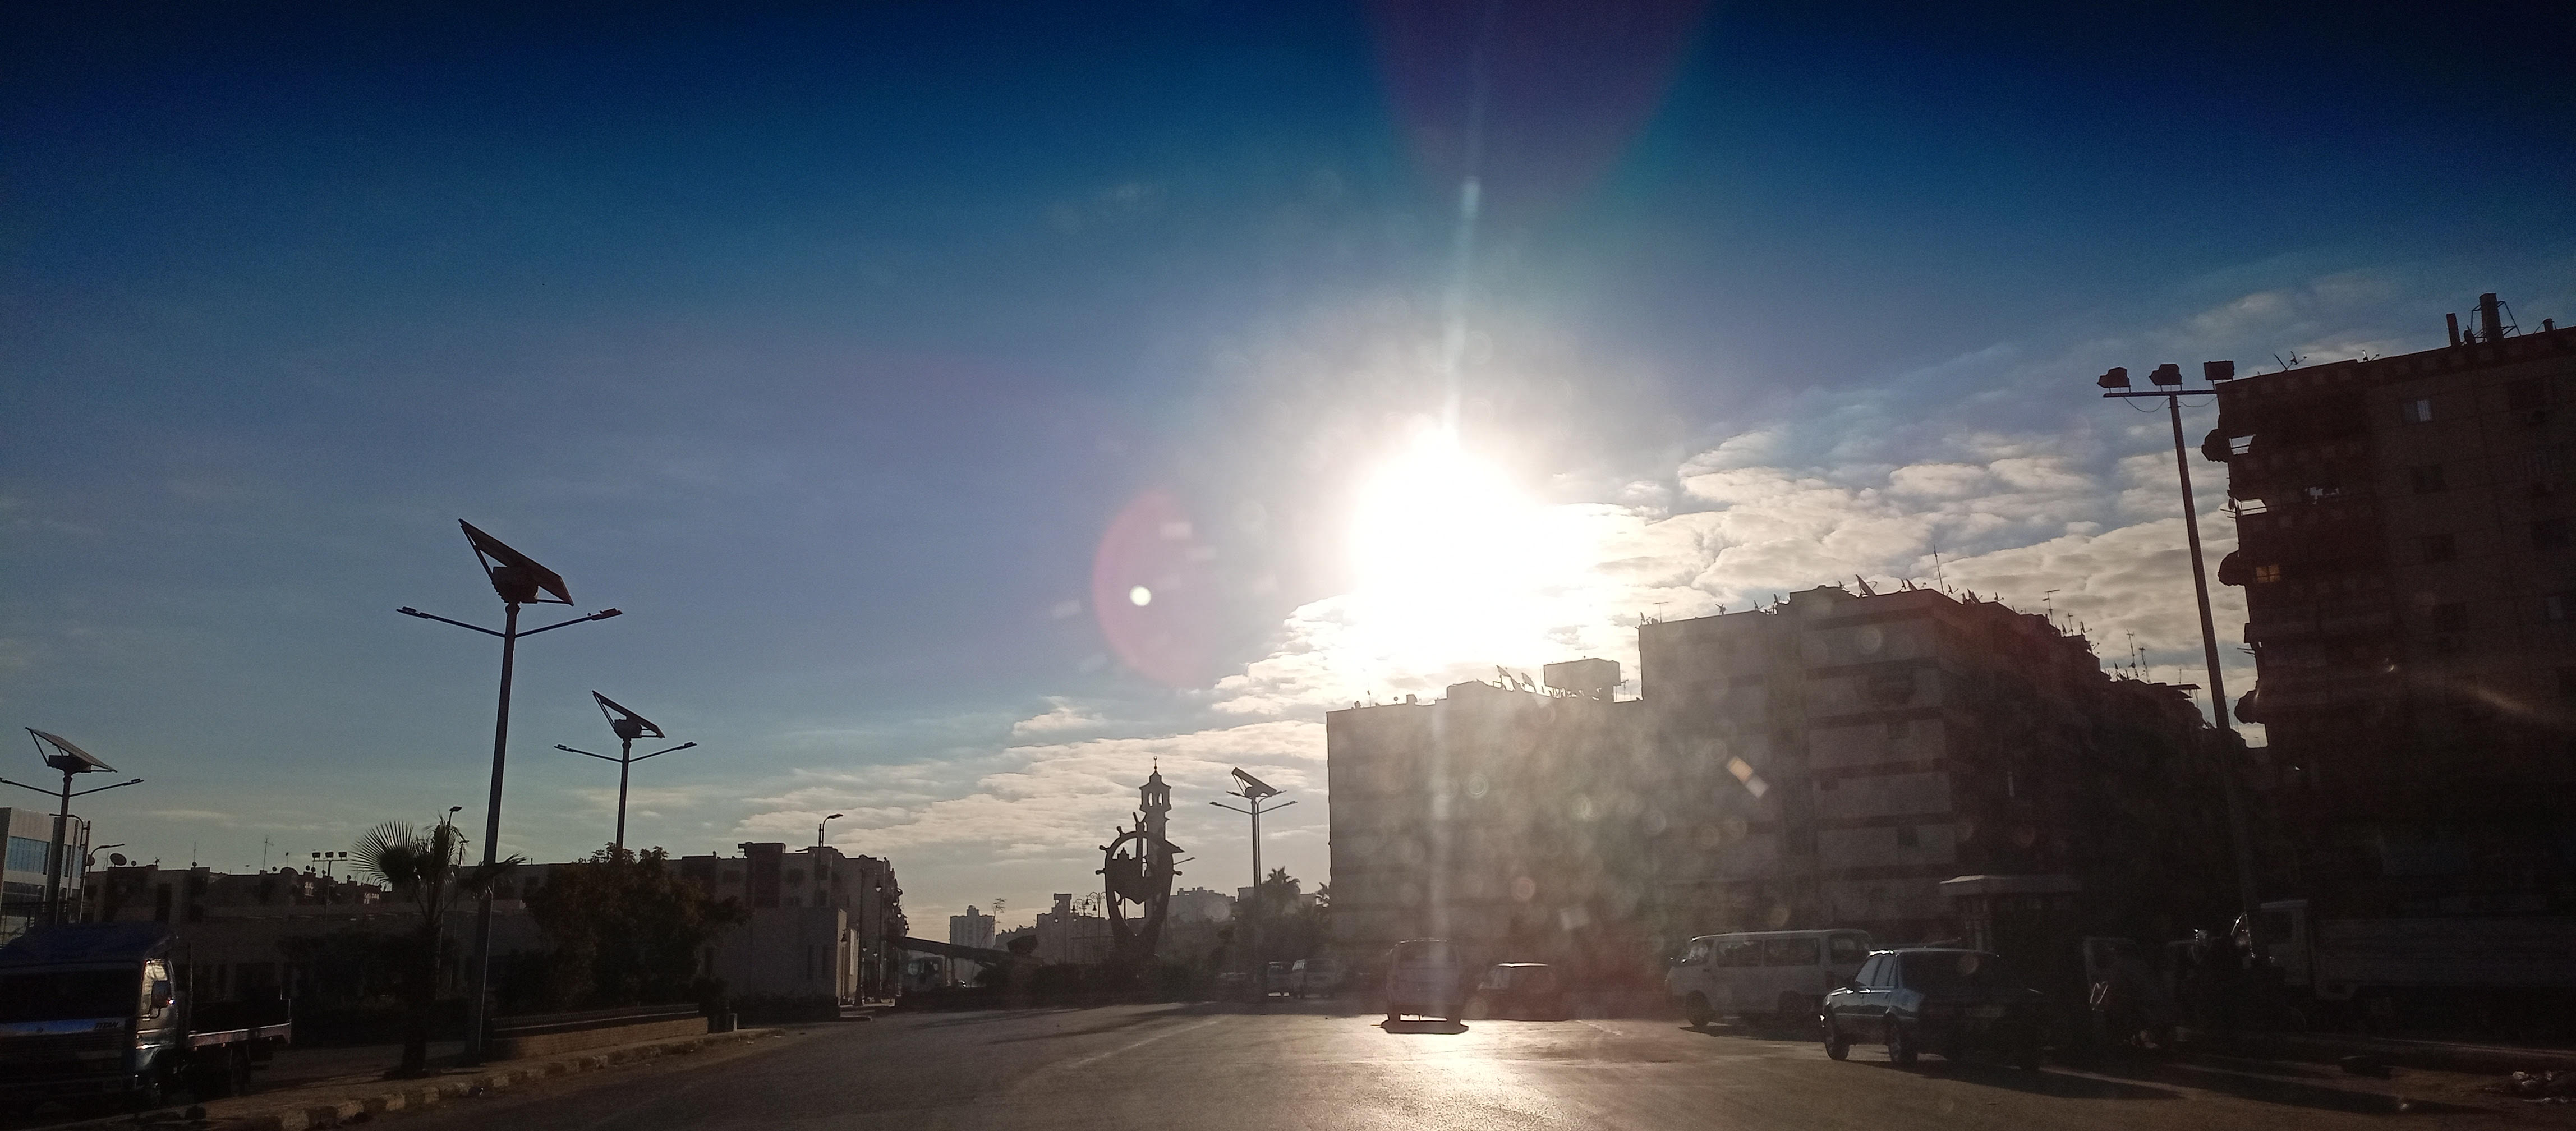  شمس ساطعة وسماء صافية وانتظام حركة المعديات فى بورسعيد (6)